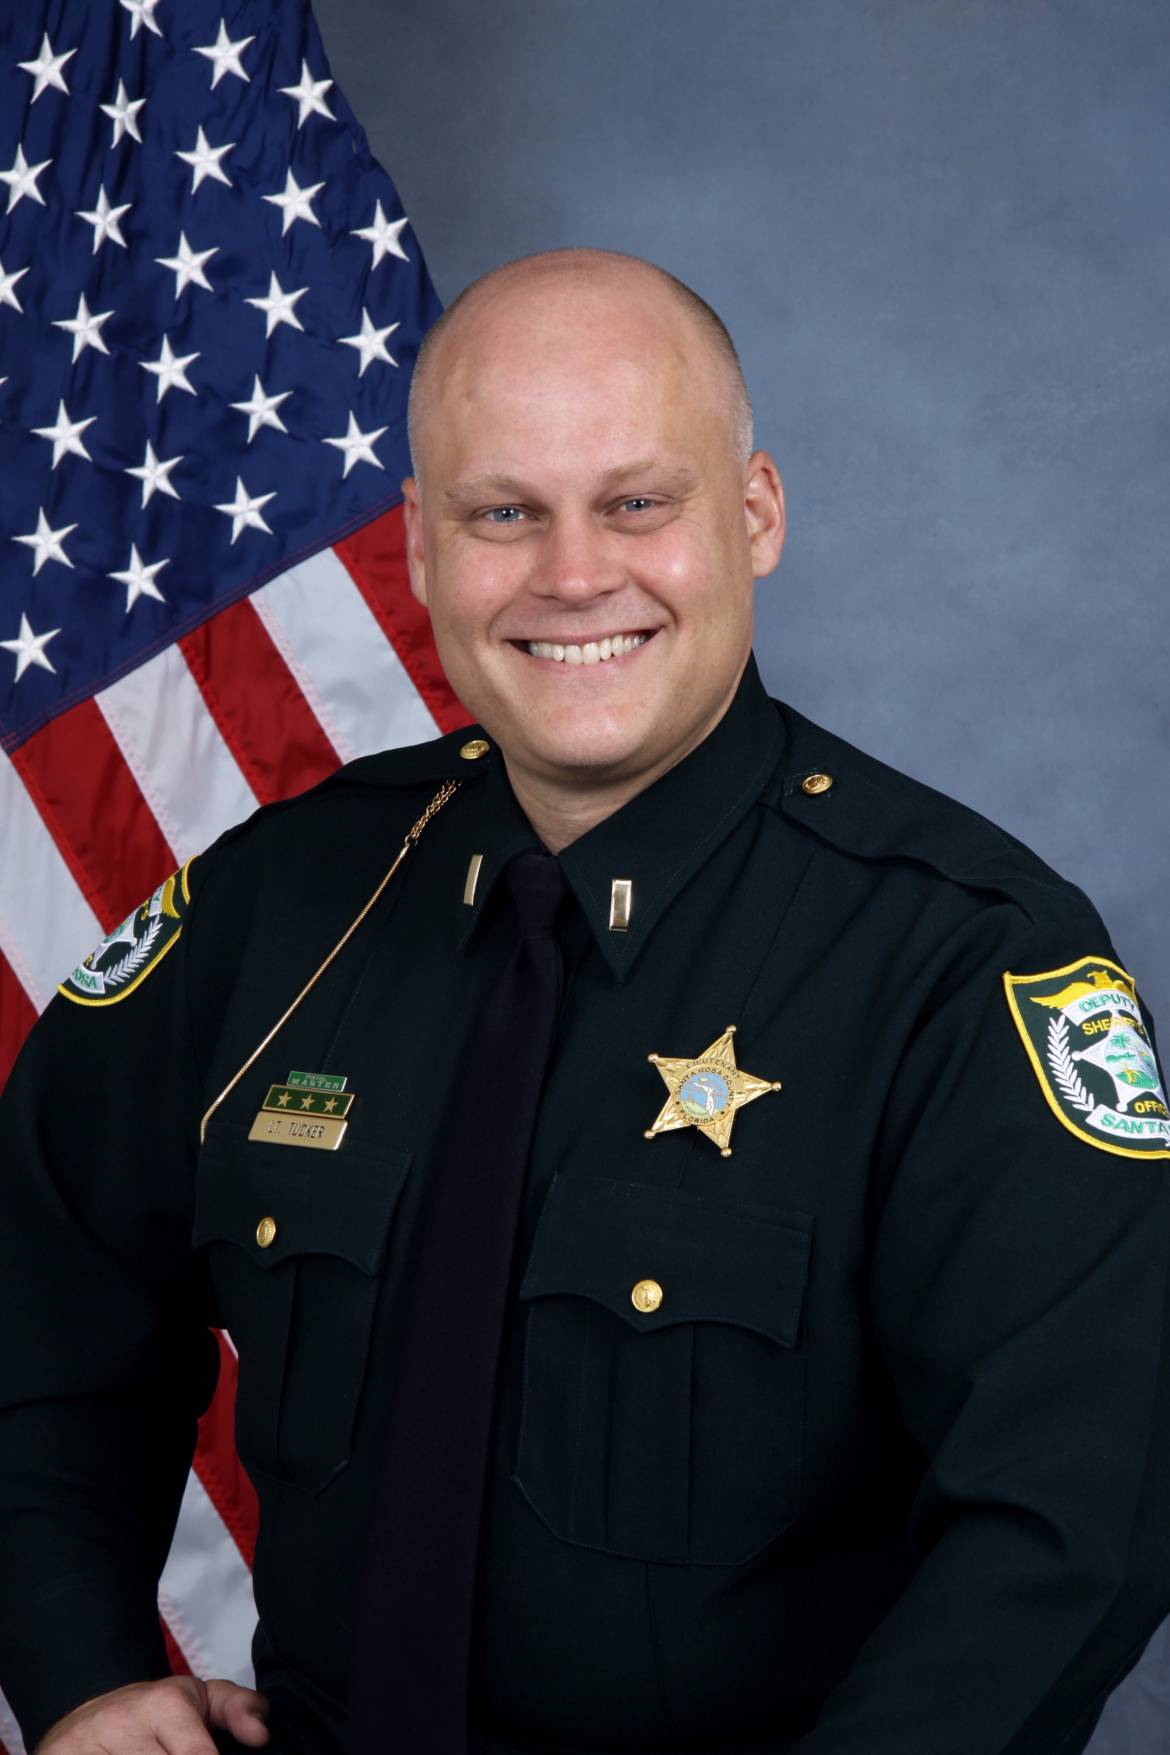 08/03/20 - Shane Tucker - Assistant Chief Deputy Santa Rosa County Sheriff's Office